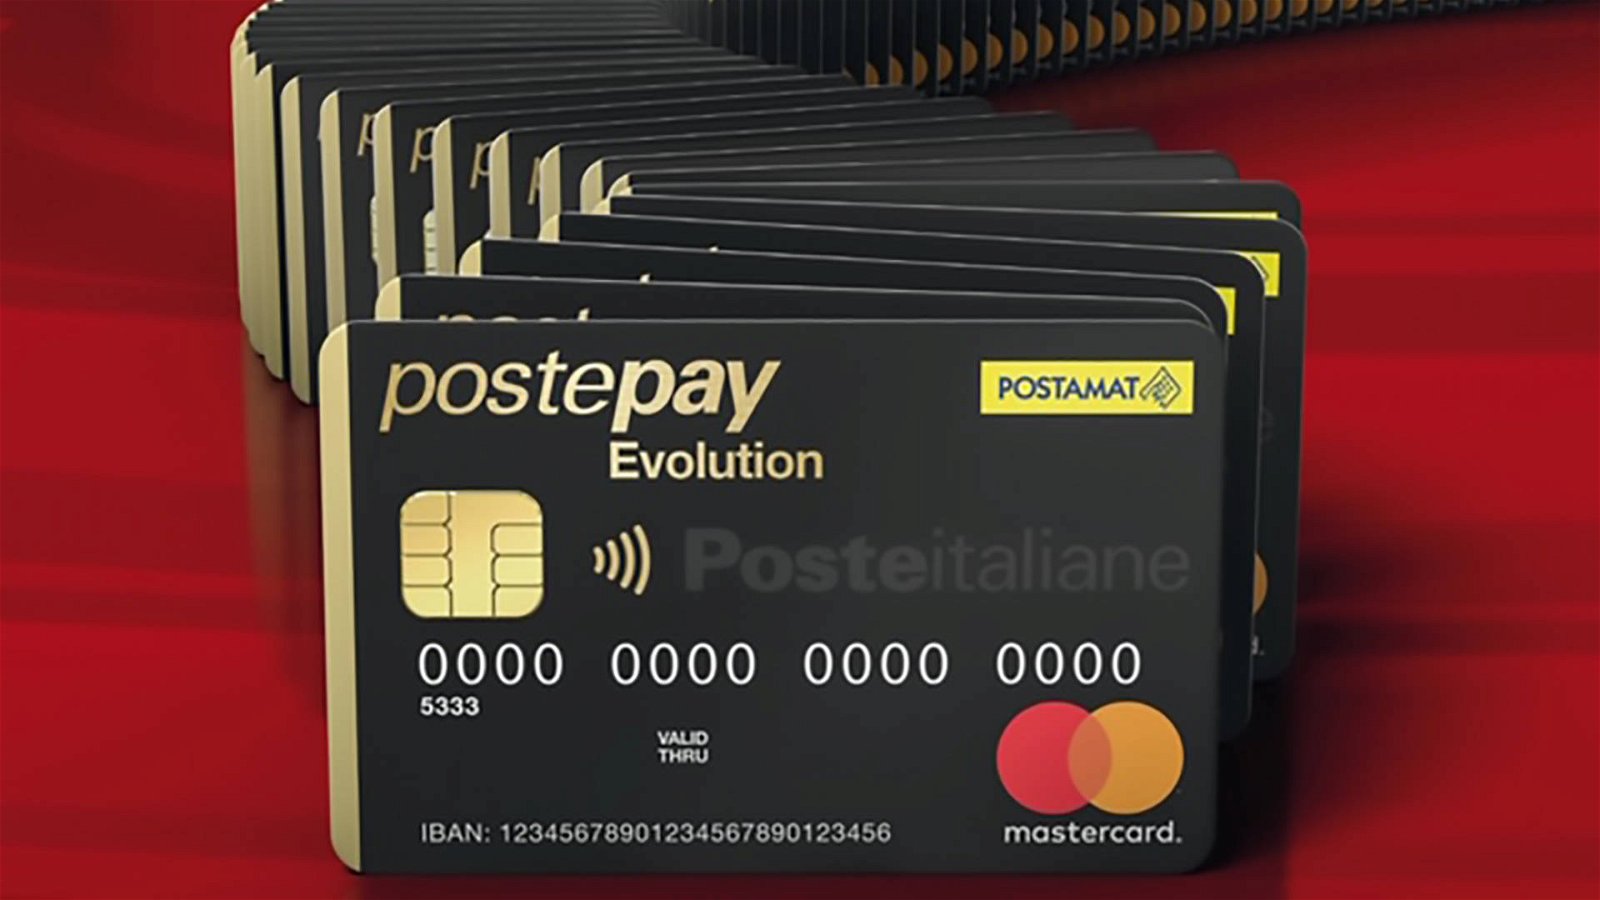 Immagine di Postepay Evolution da record, raggiunto il traguardo di 6 milioni di carte emesse